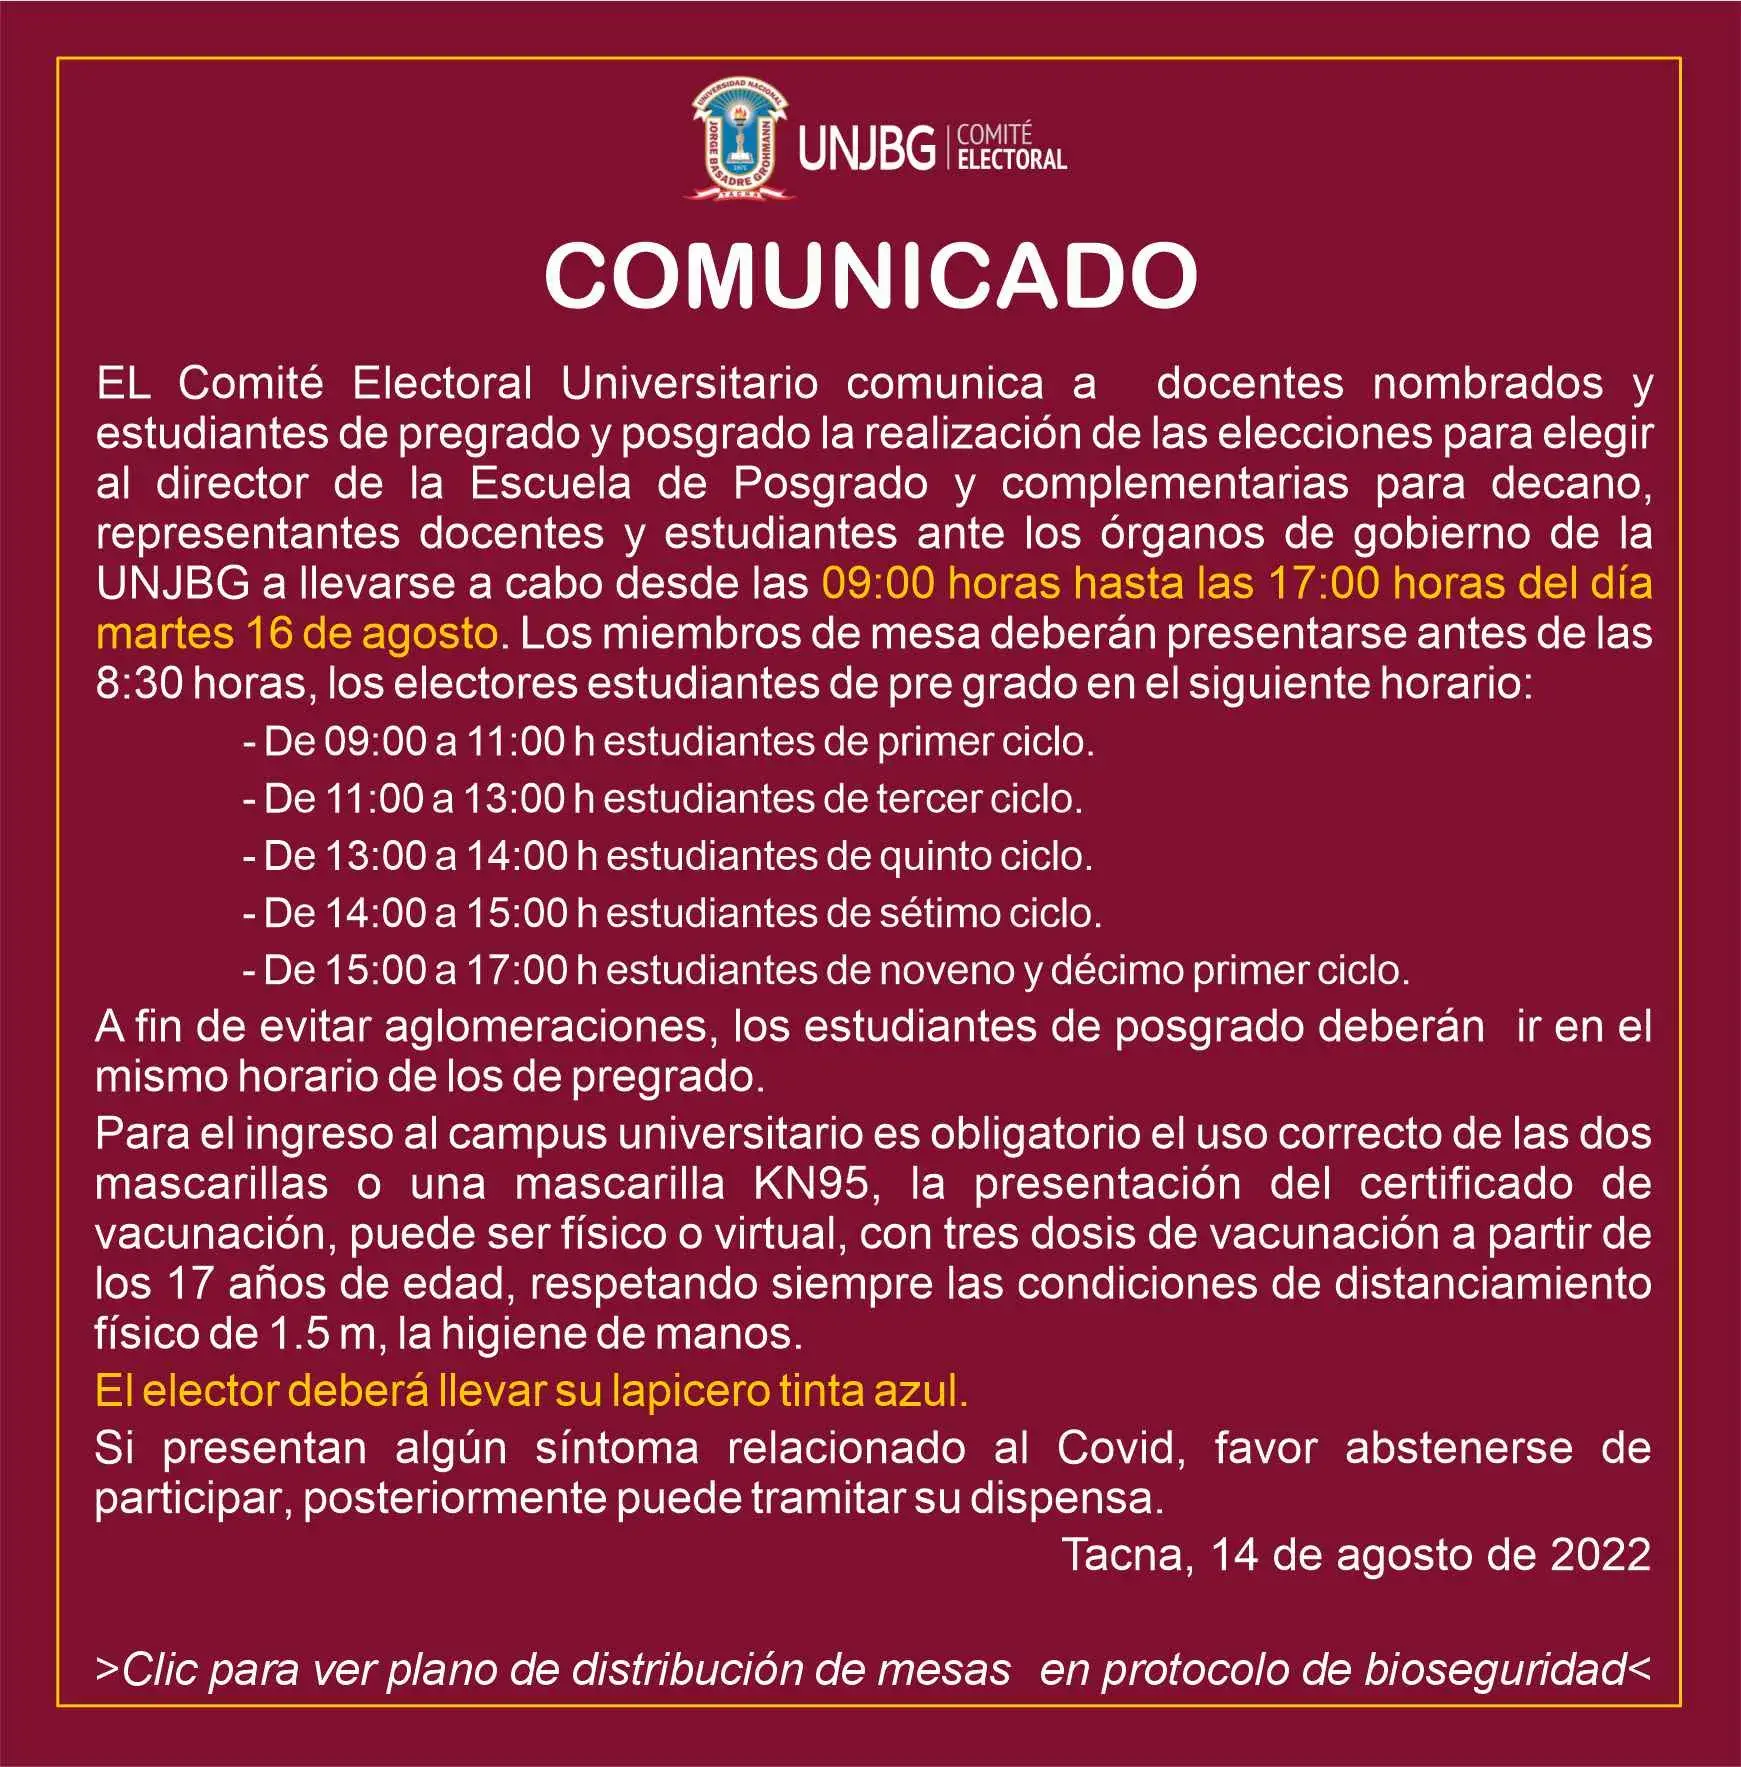 COMUNICADO ELECCIONES 16 DE AGOSTO DE 2022